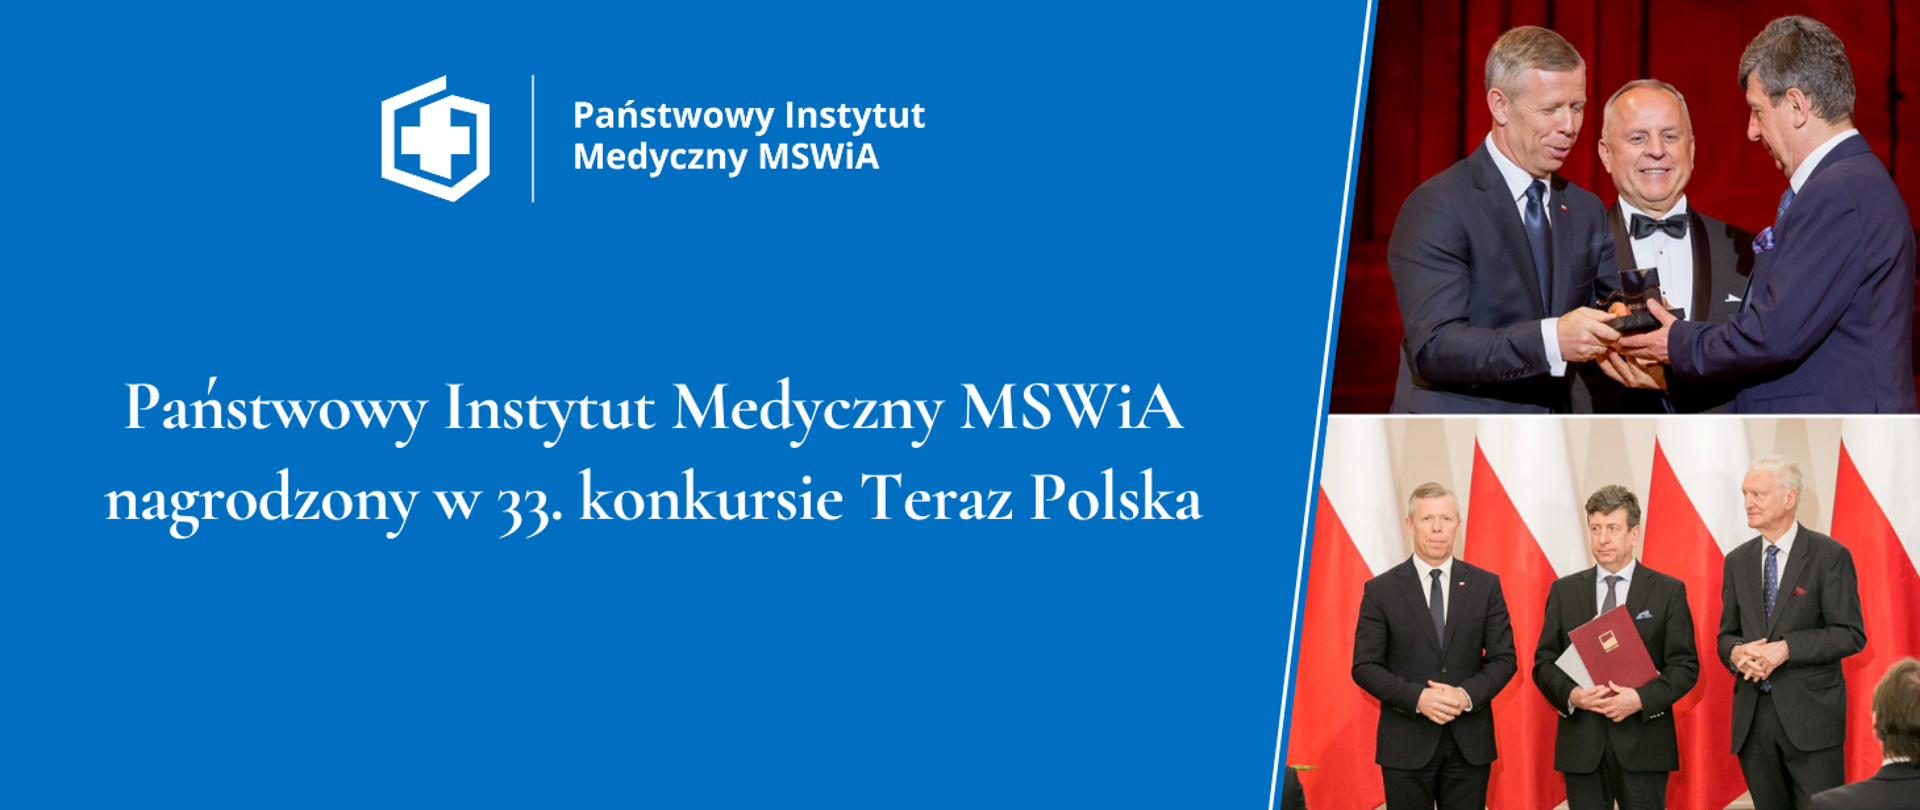 Państwowy Instytut Medyczny MSWiA nagrodzony w 33. konkursie Teraz Polska